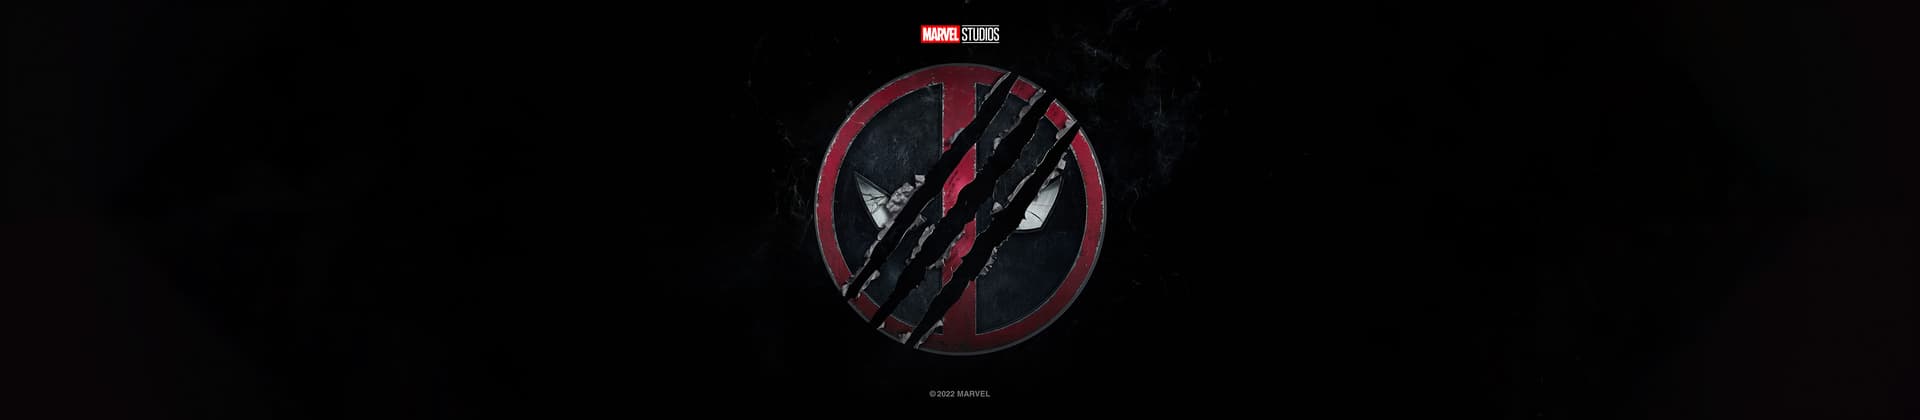 Untitled Deadpool Movie Deadpool 3 Logo on Black